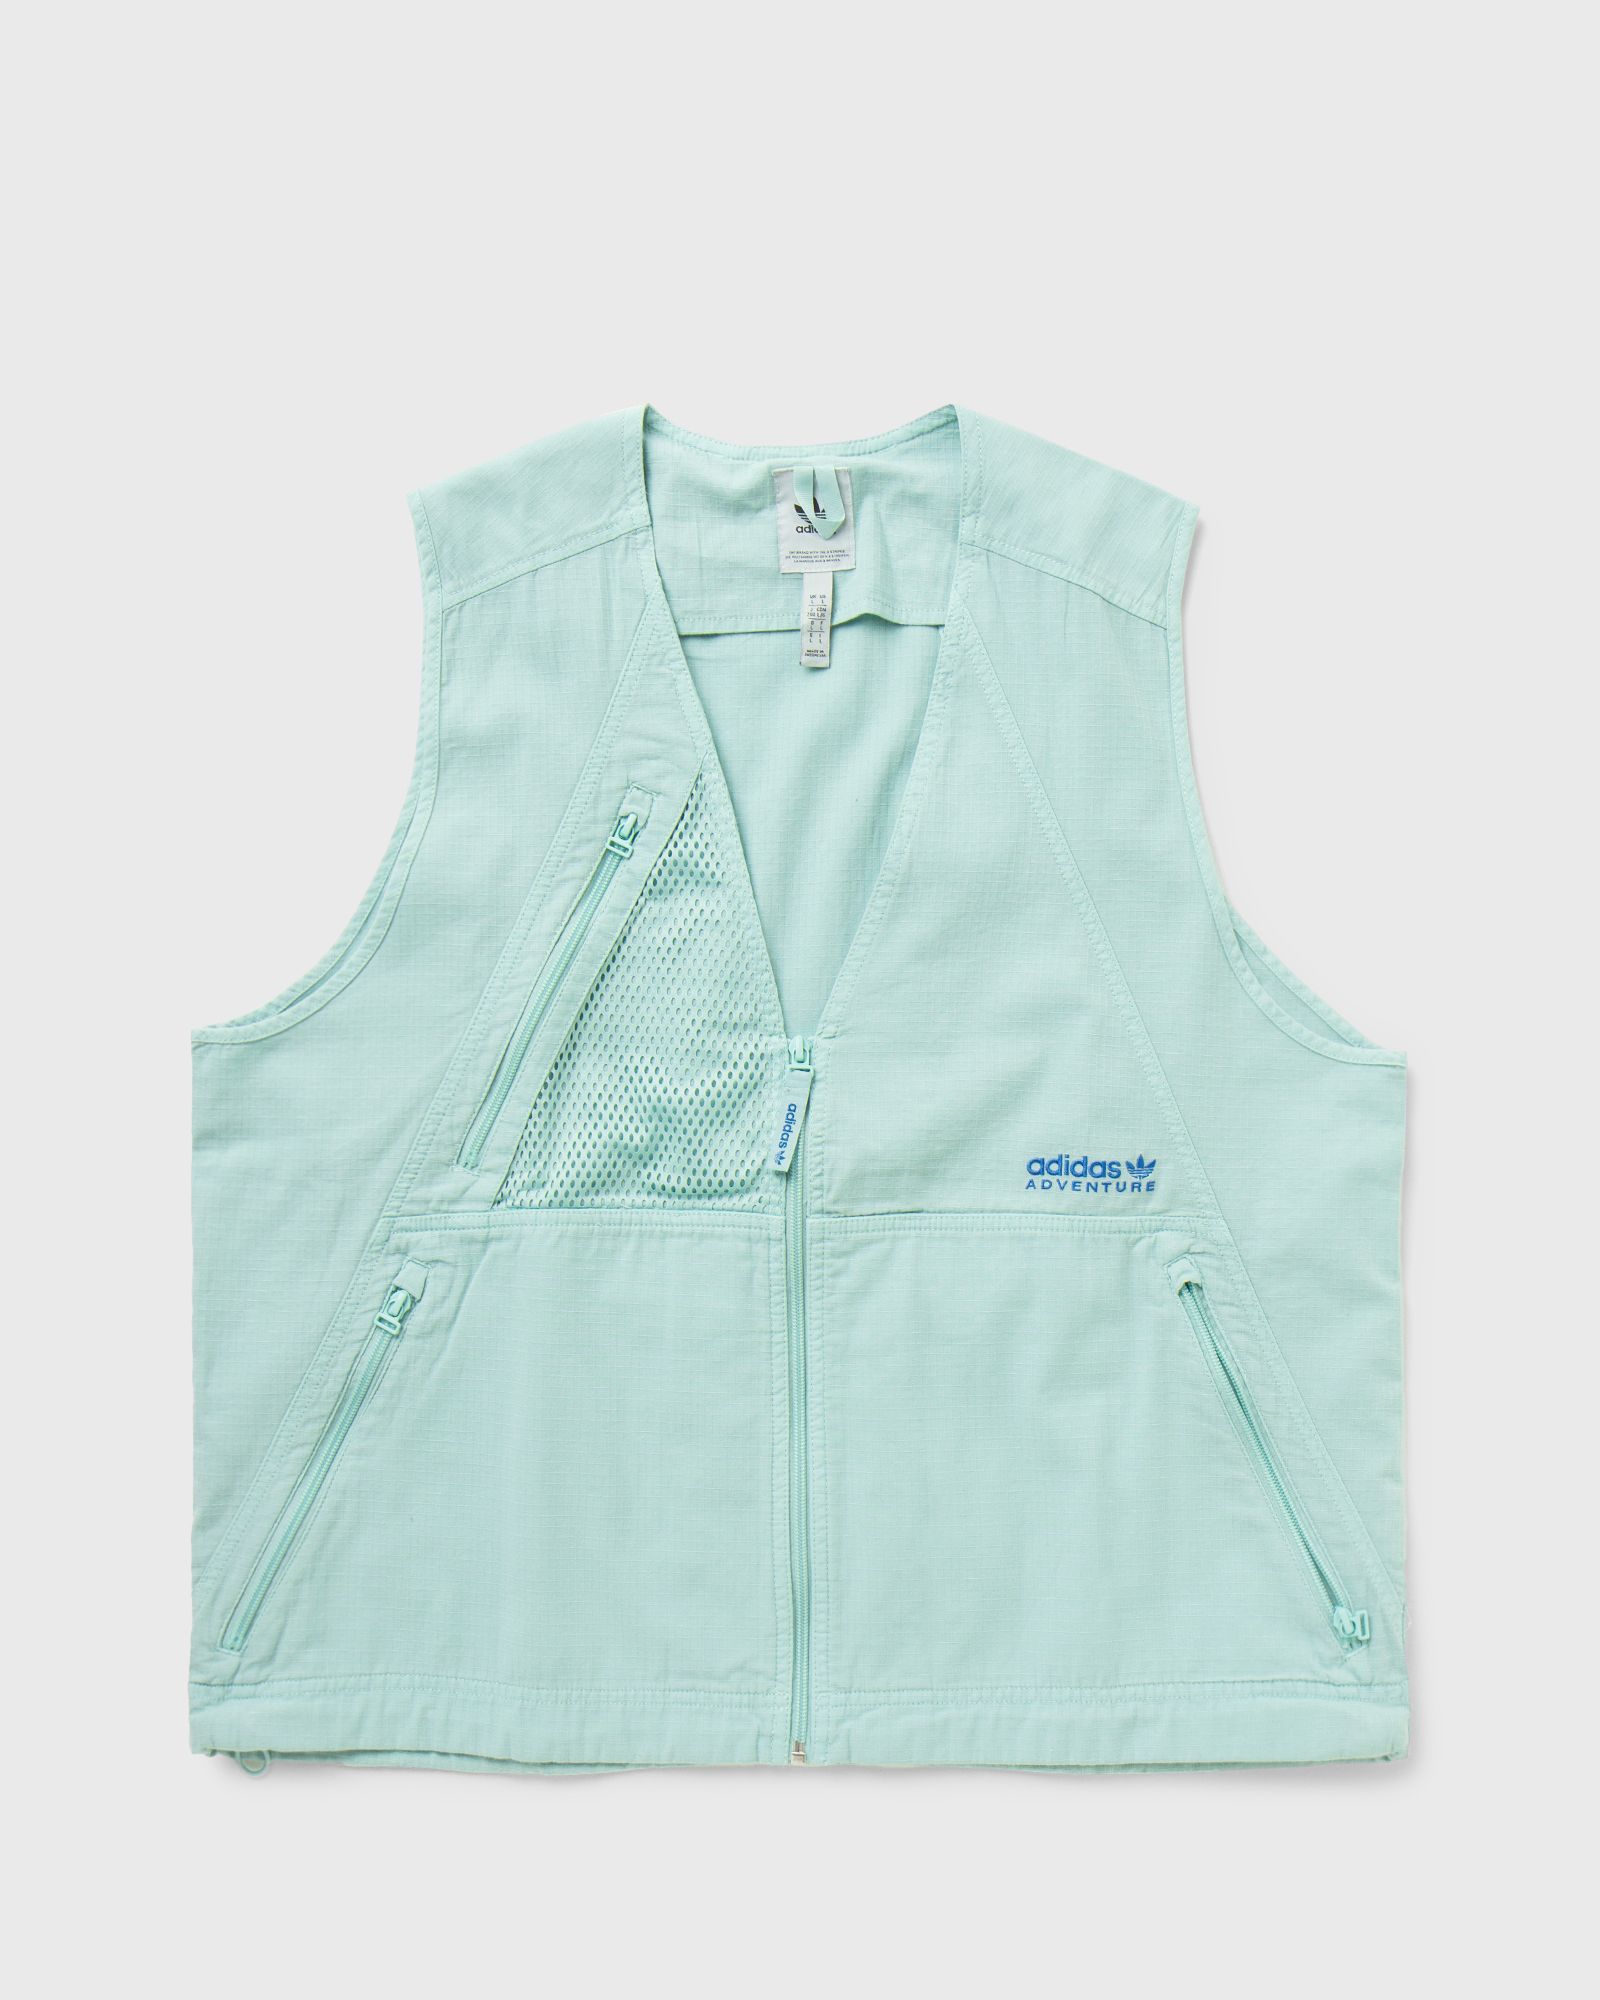 Adidas - sw vest men vests green in größe:l